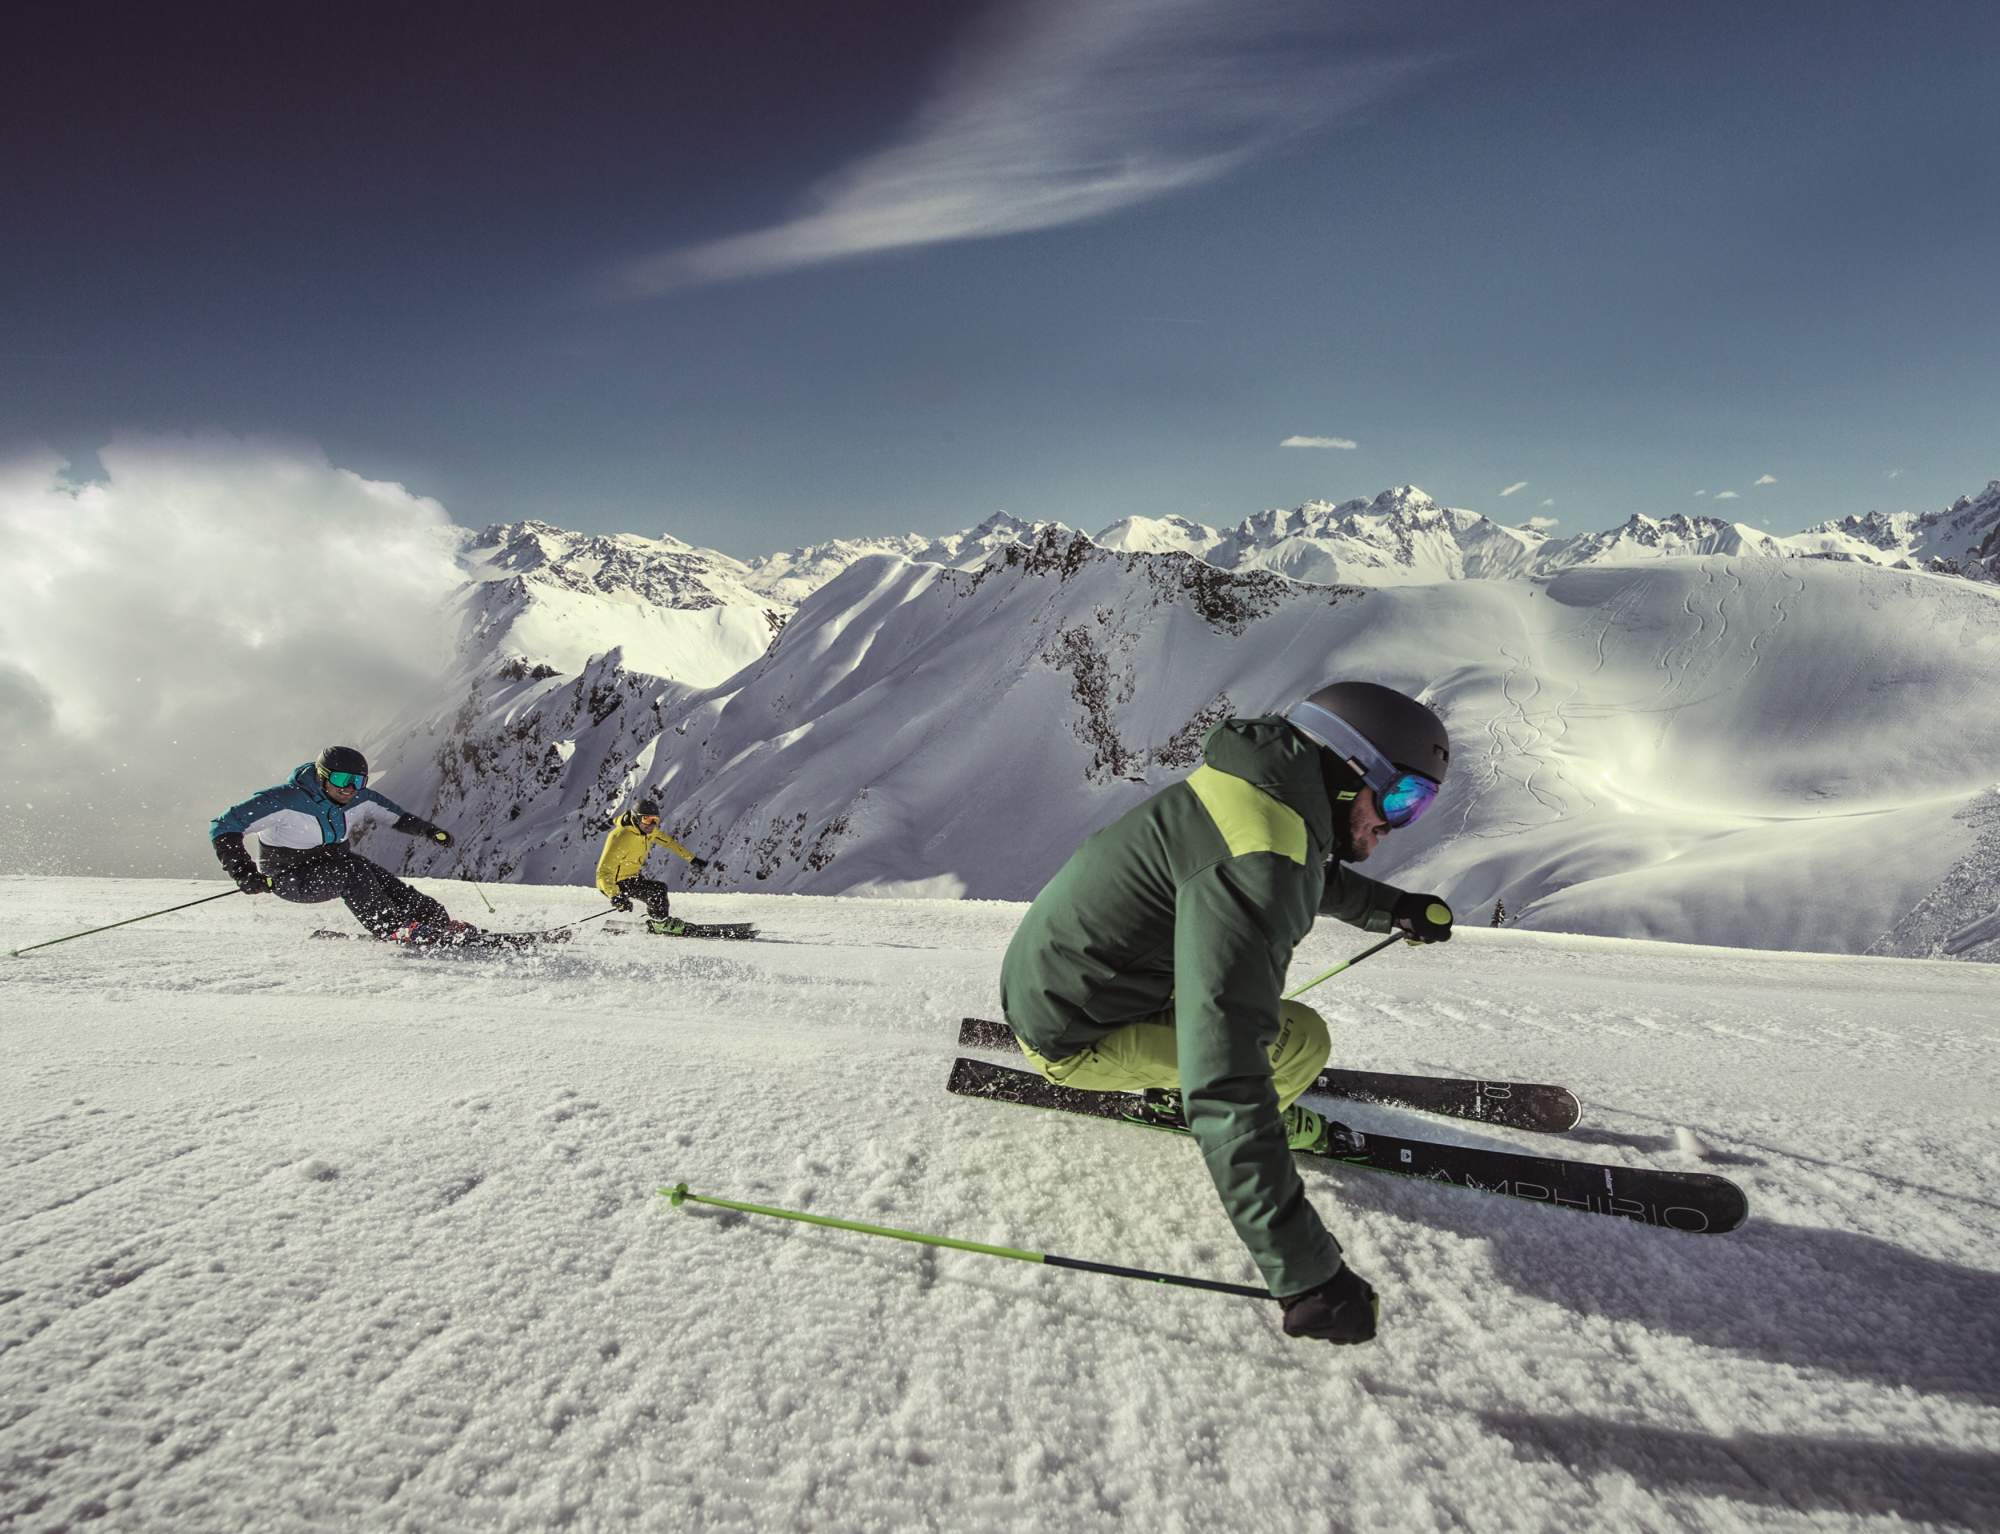 Горные лыжи Elan Amphibio 14Ti Fusionx + Emx 11 Fusionx 2021, blue/green, 160 см